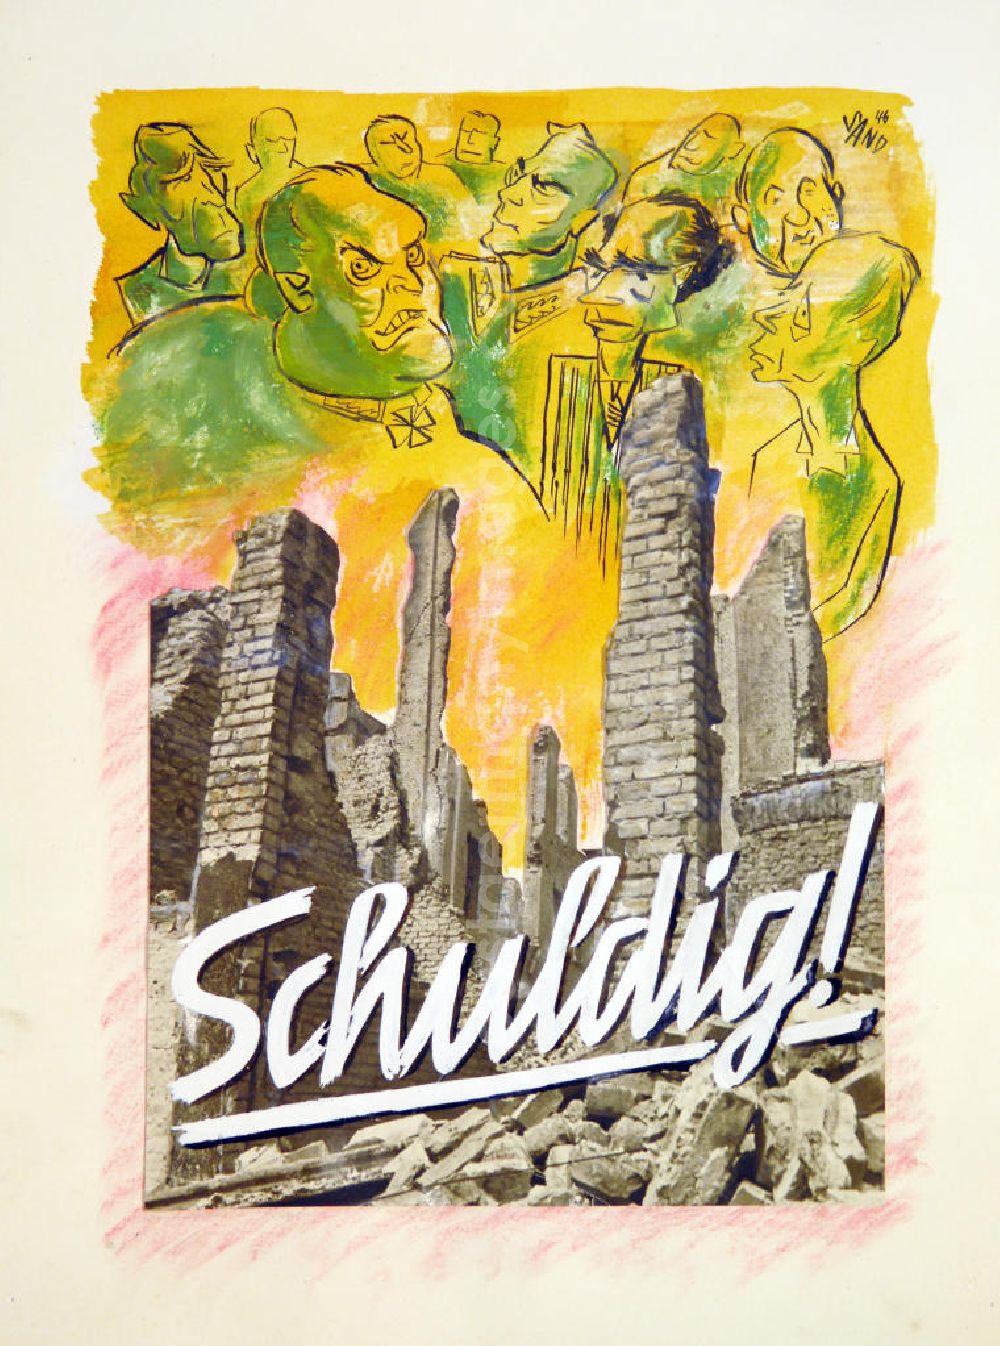 GDR photo archive: Berlin - Zeichnung von Herbert Sandberg Schuldig! aus dem Jahr 1946, 20,